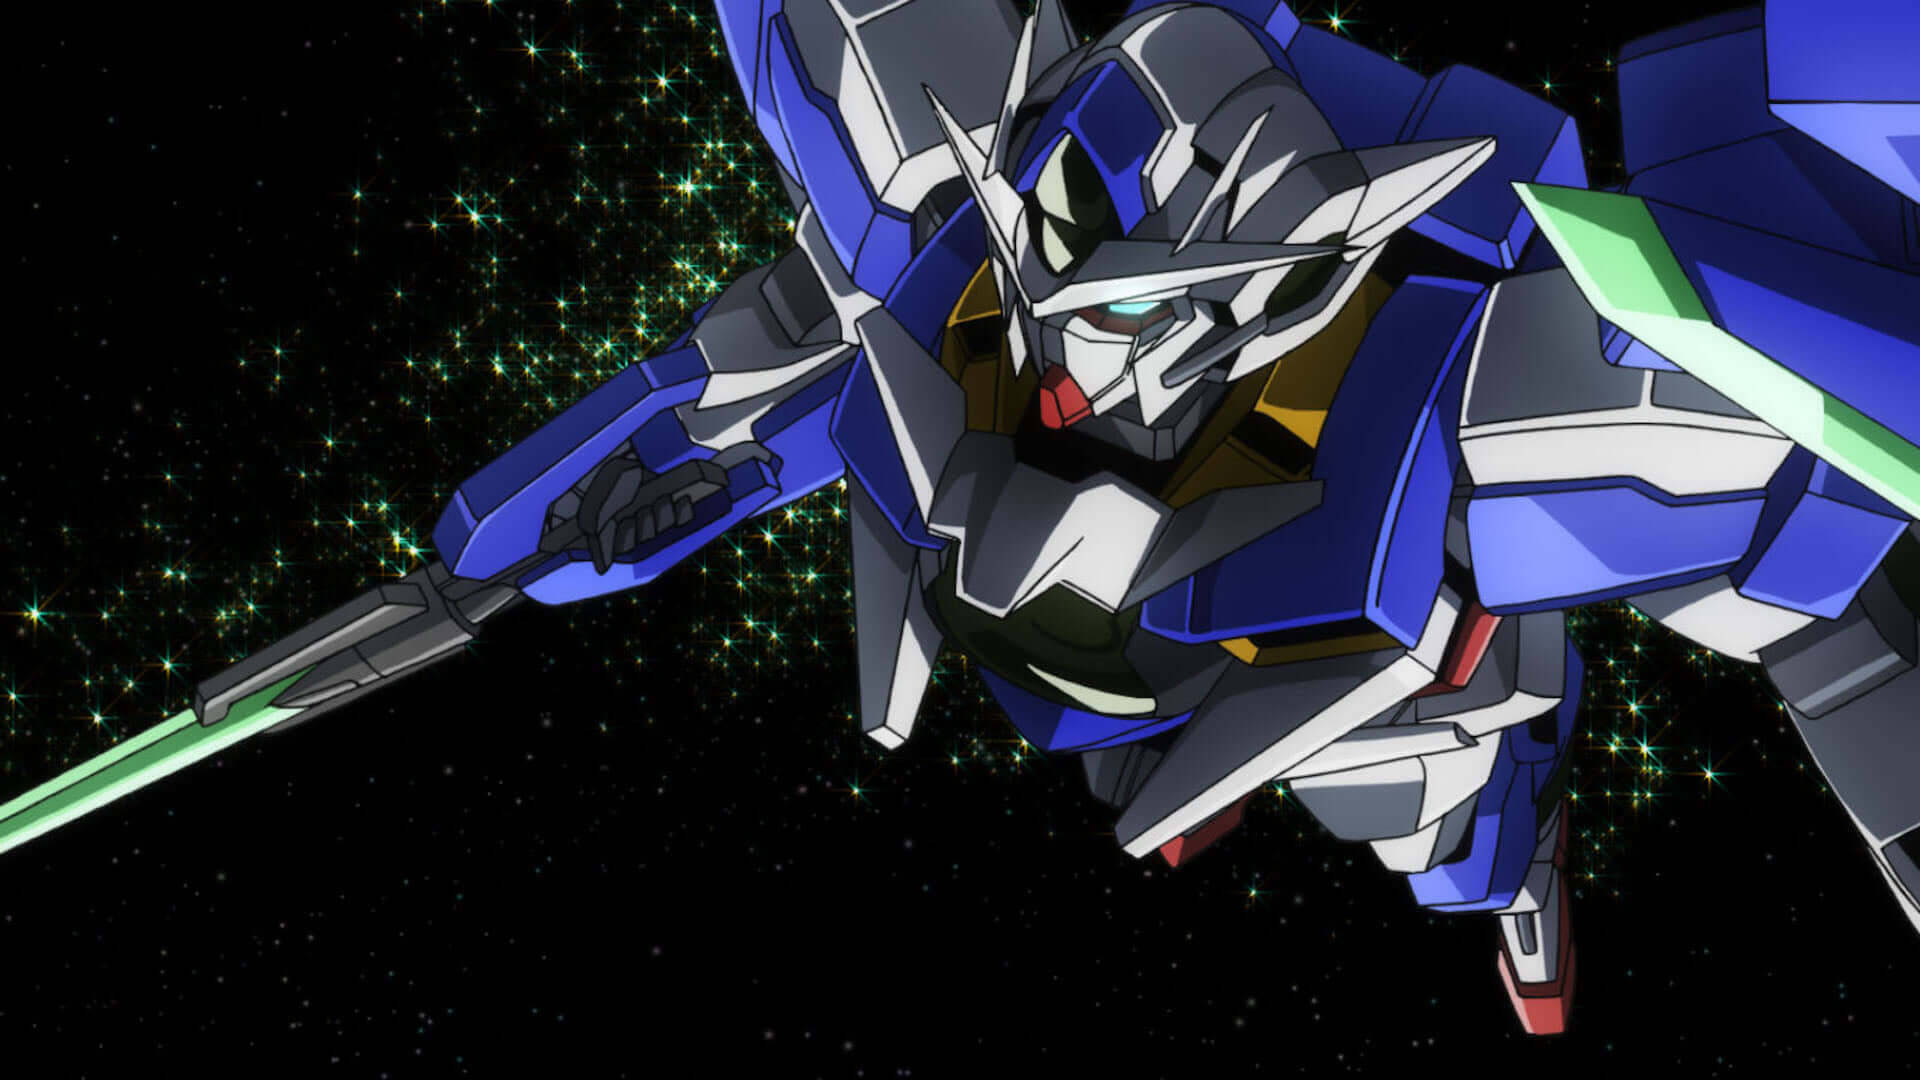 Anime Anime Screenshot Gundam Mechs Mobile Suit Gundam 00 Artwork Digital Art 00 Qan T Super Robot T Wallpaper Resolution 19x1080 Id Wallha Com